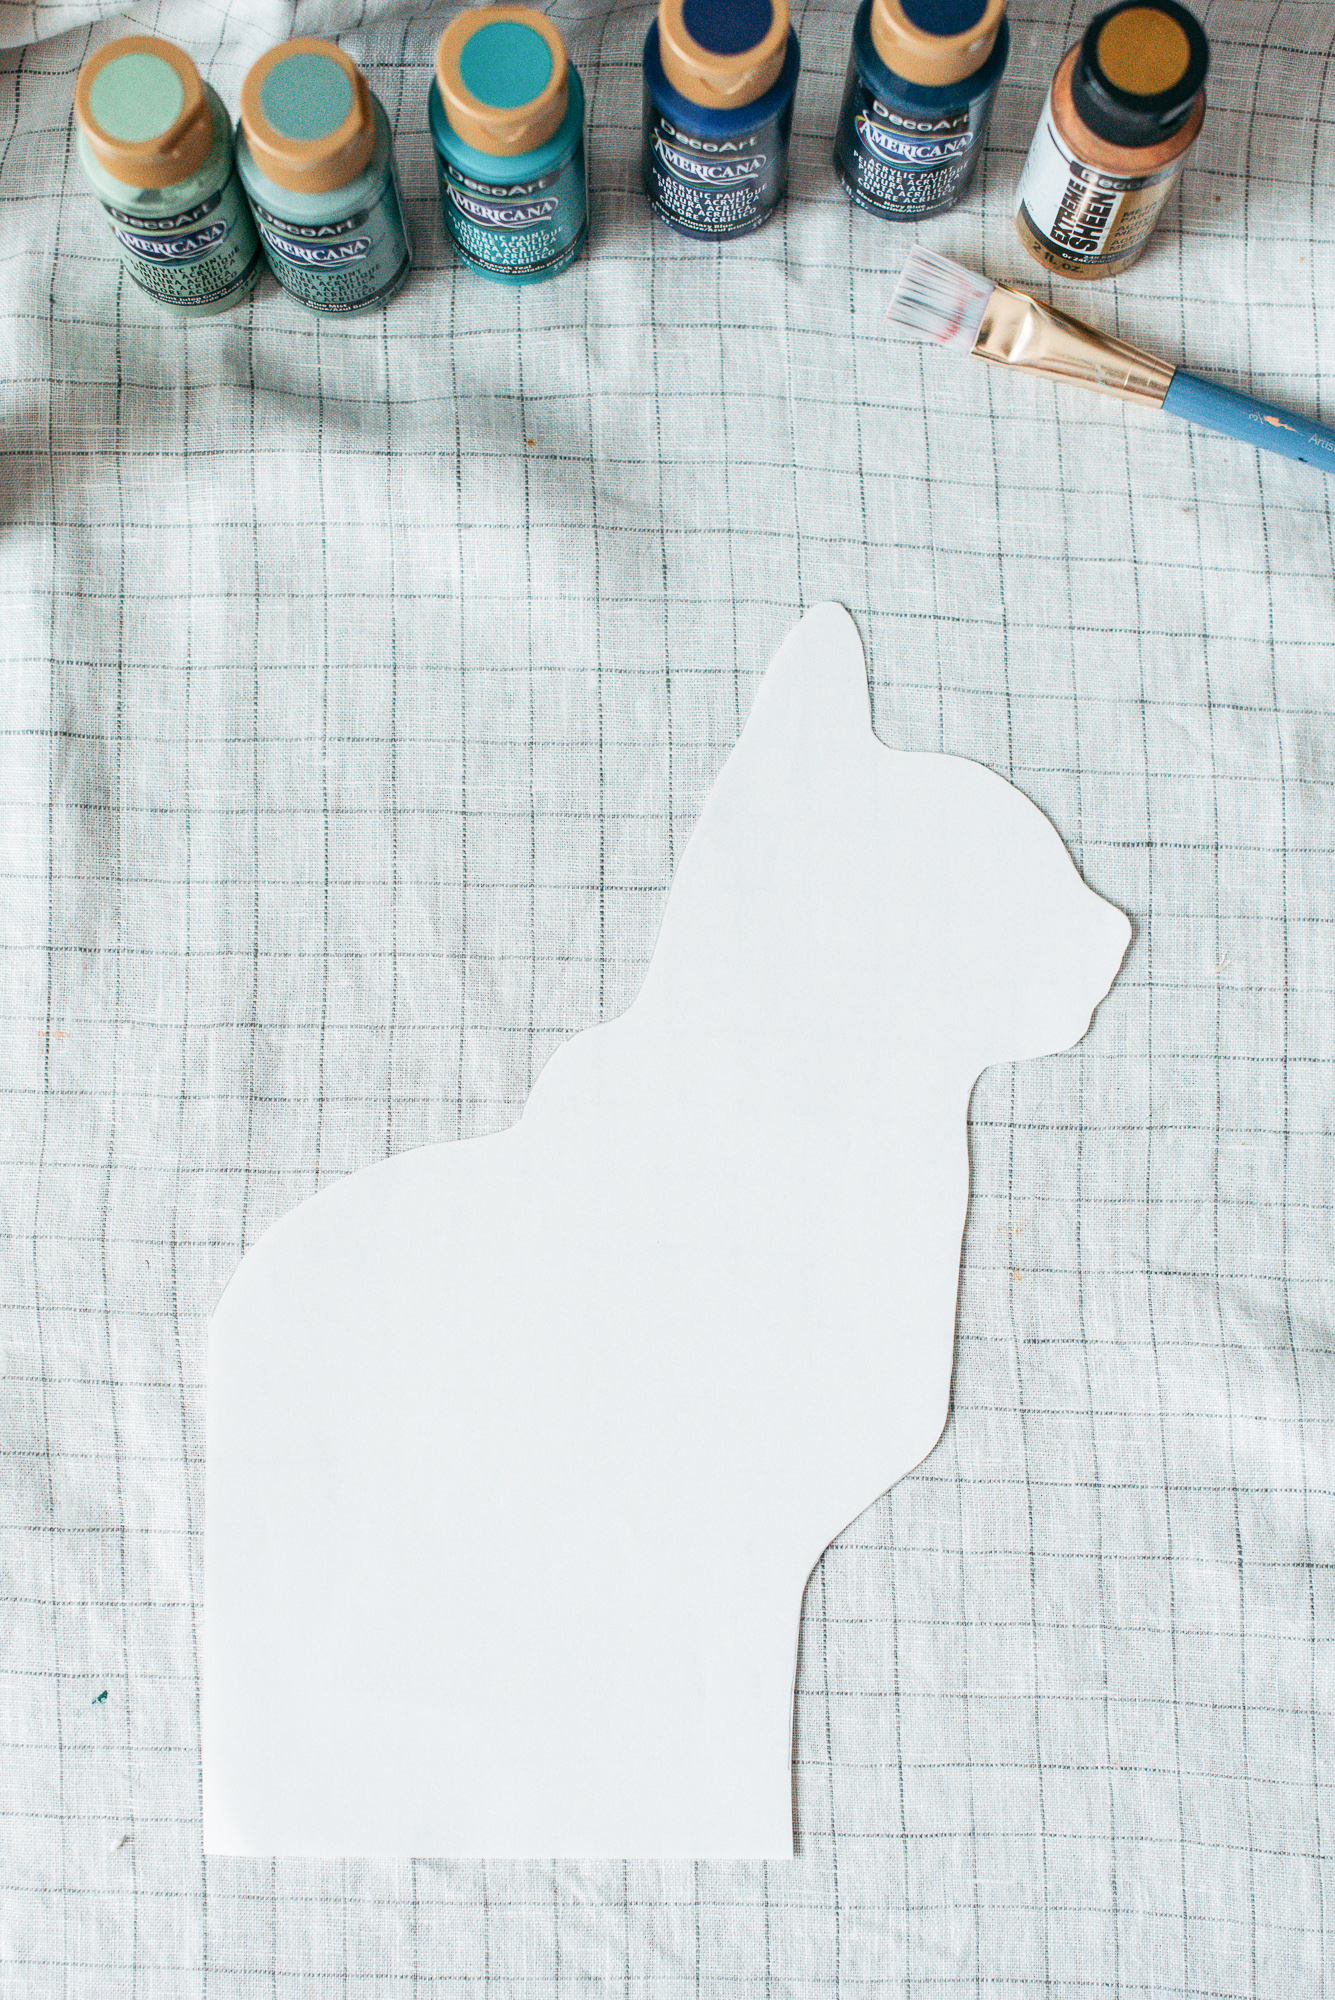 DIY pet silhouette art from Dear Handmade Life